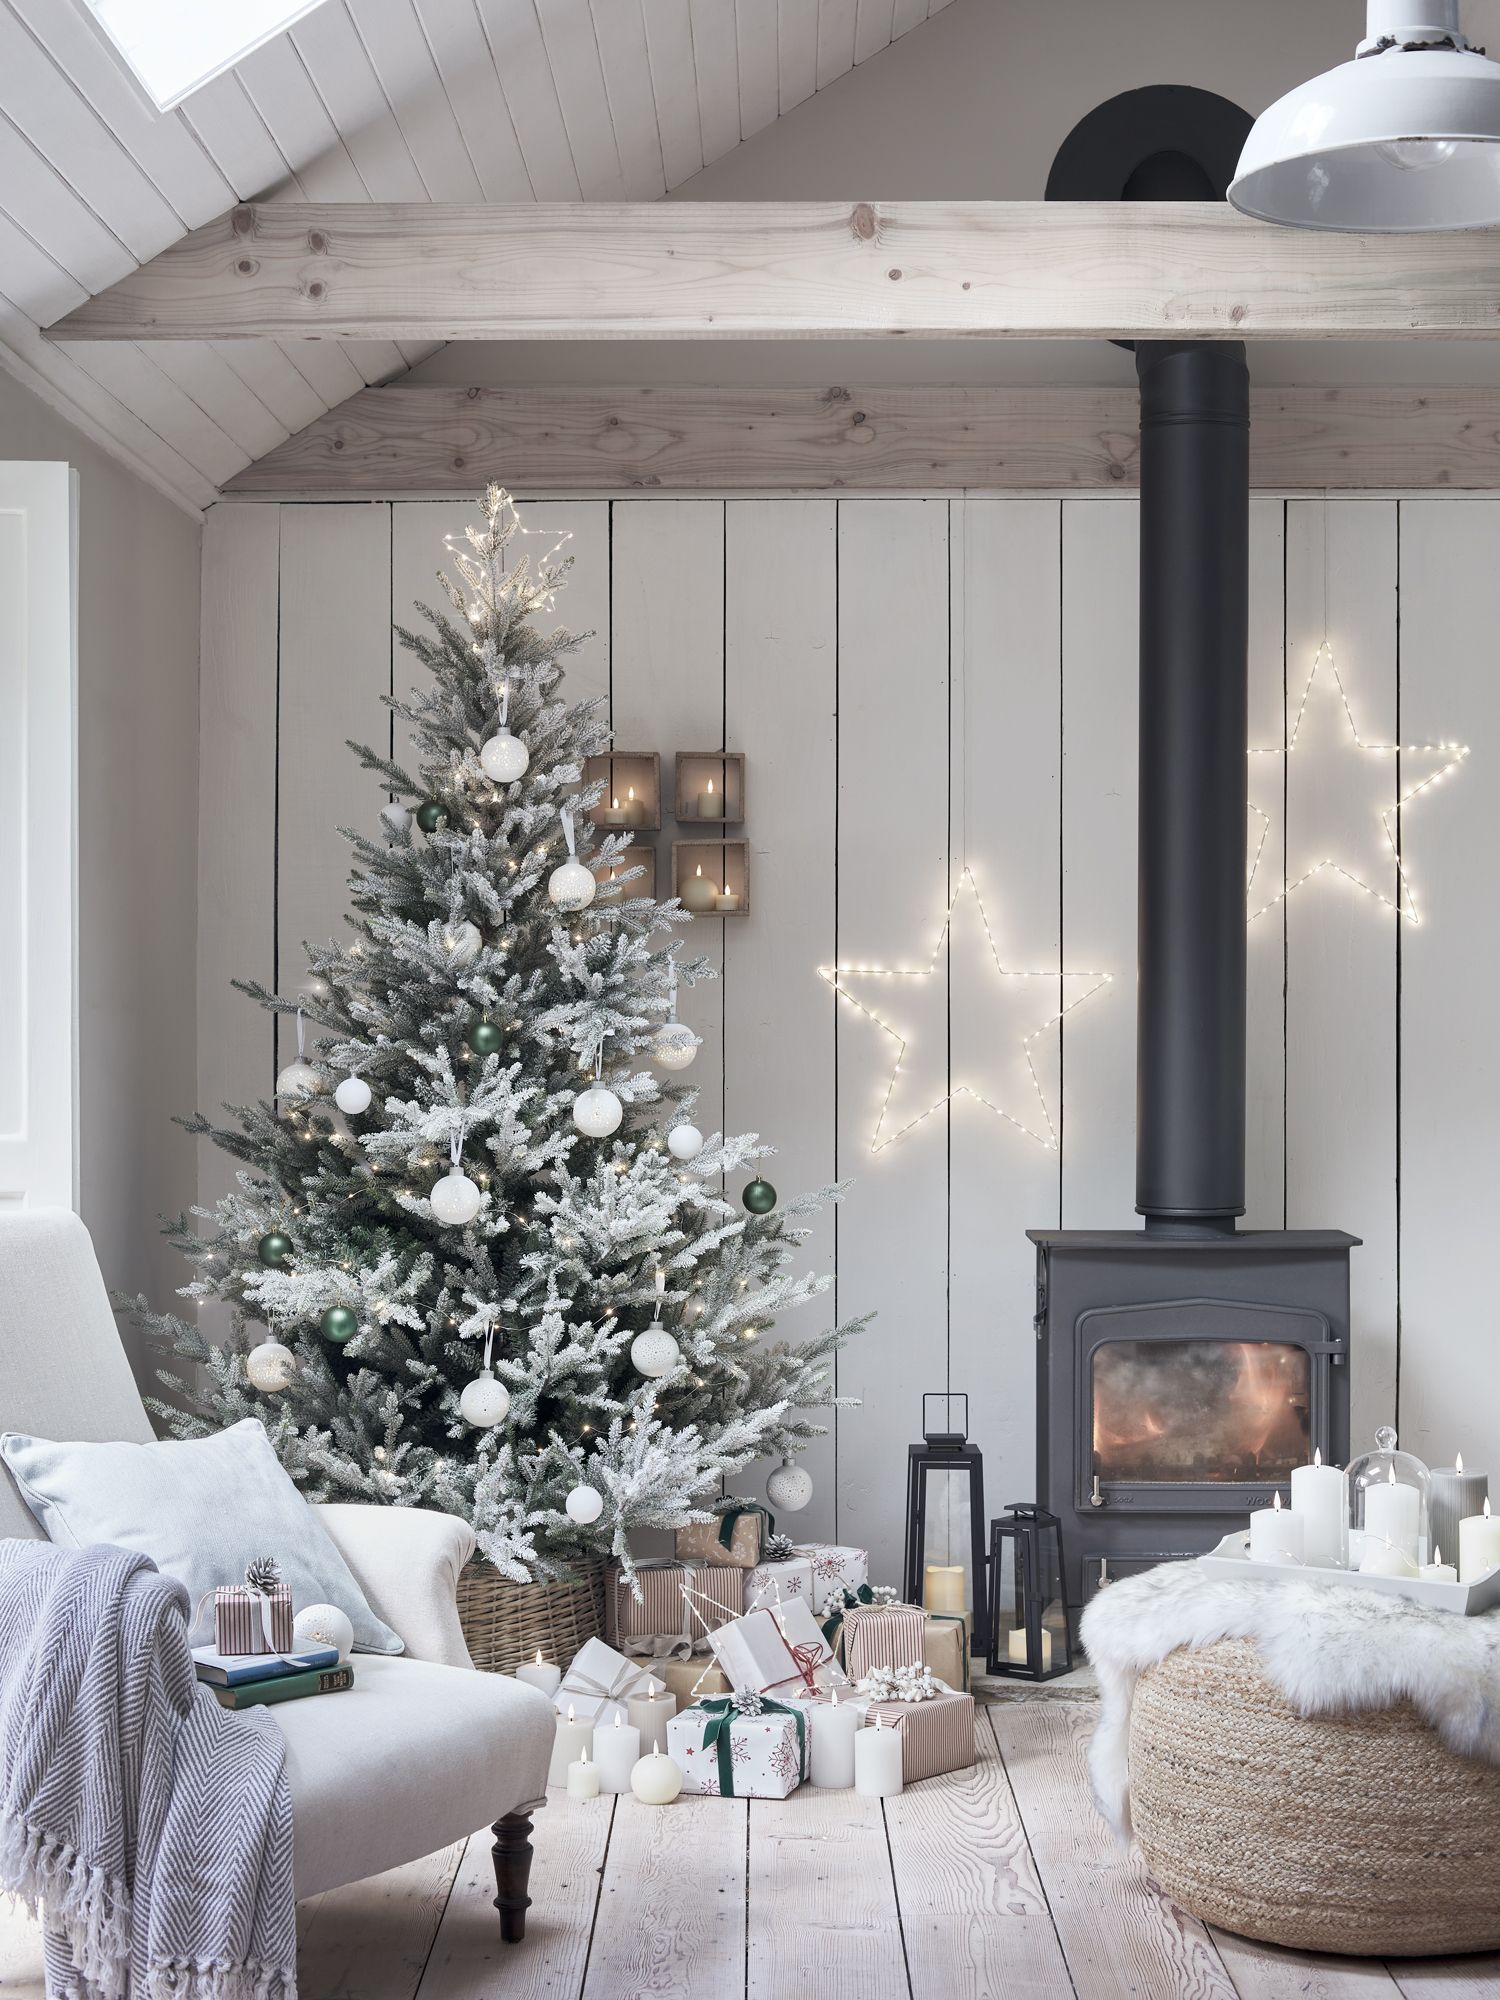 Cómo decorar tu casa en Navidad, Ideas Interesantes - Ehka Home